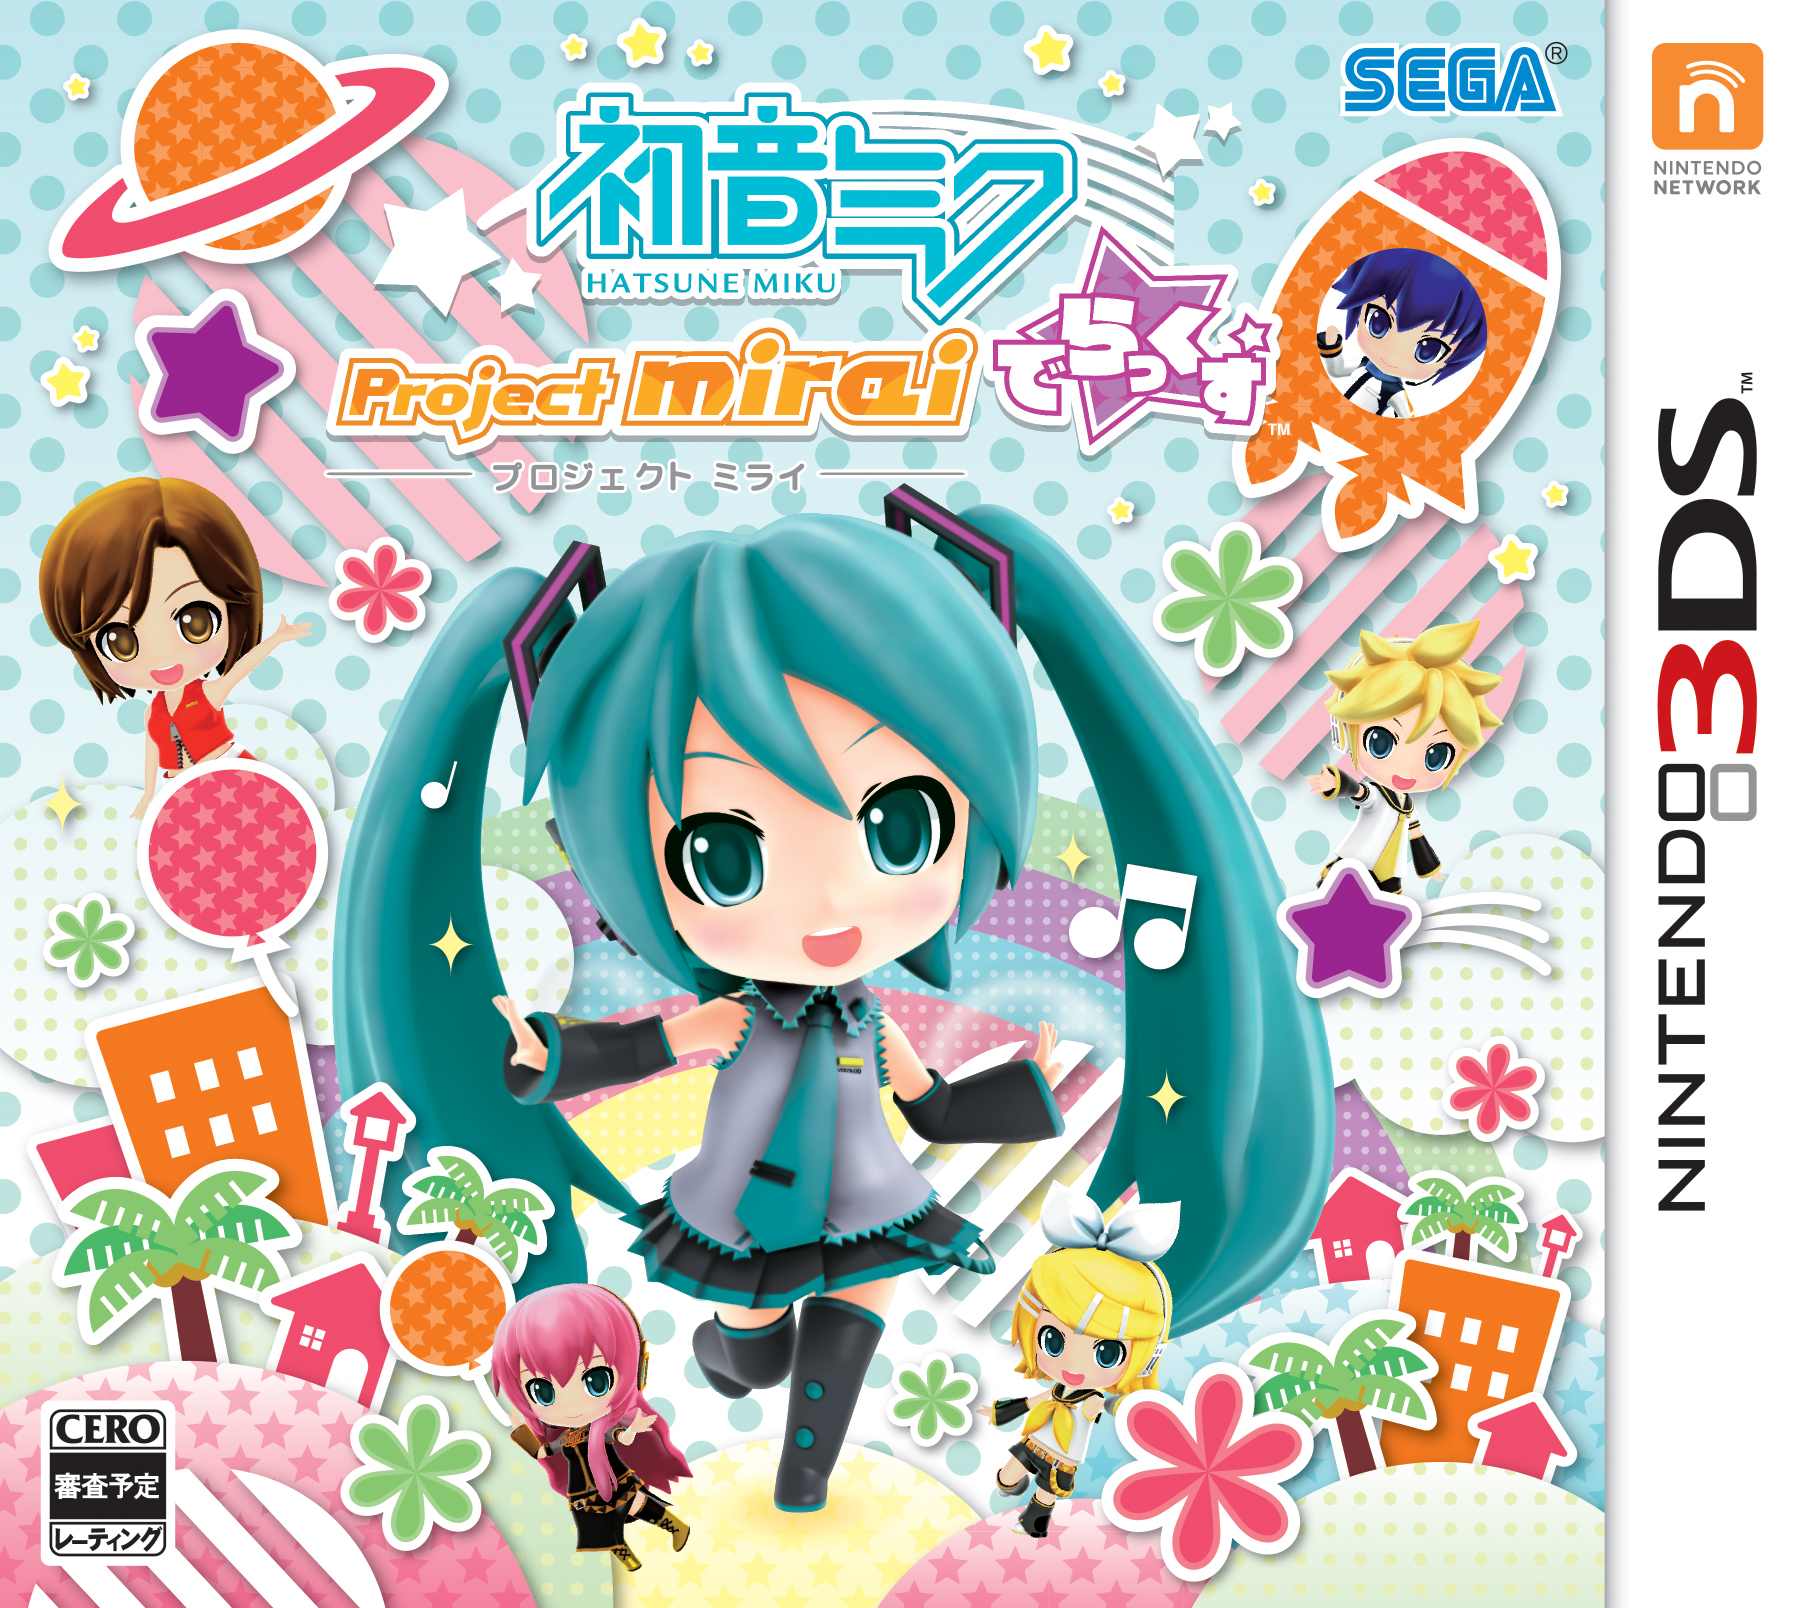 まんまるでらっくすカワイイ リズムゲーム 初音ミク Project Mirai でらっくす の発売日が 5月28日 木 に決定 株式会社セガのプレスリリース